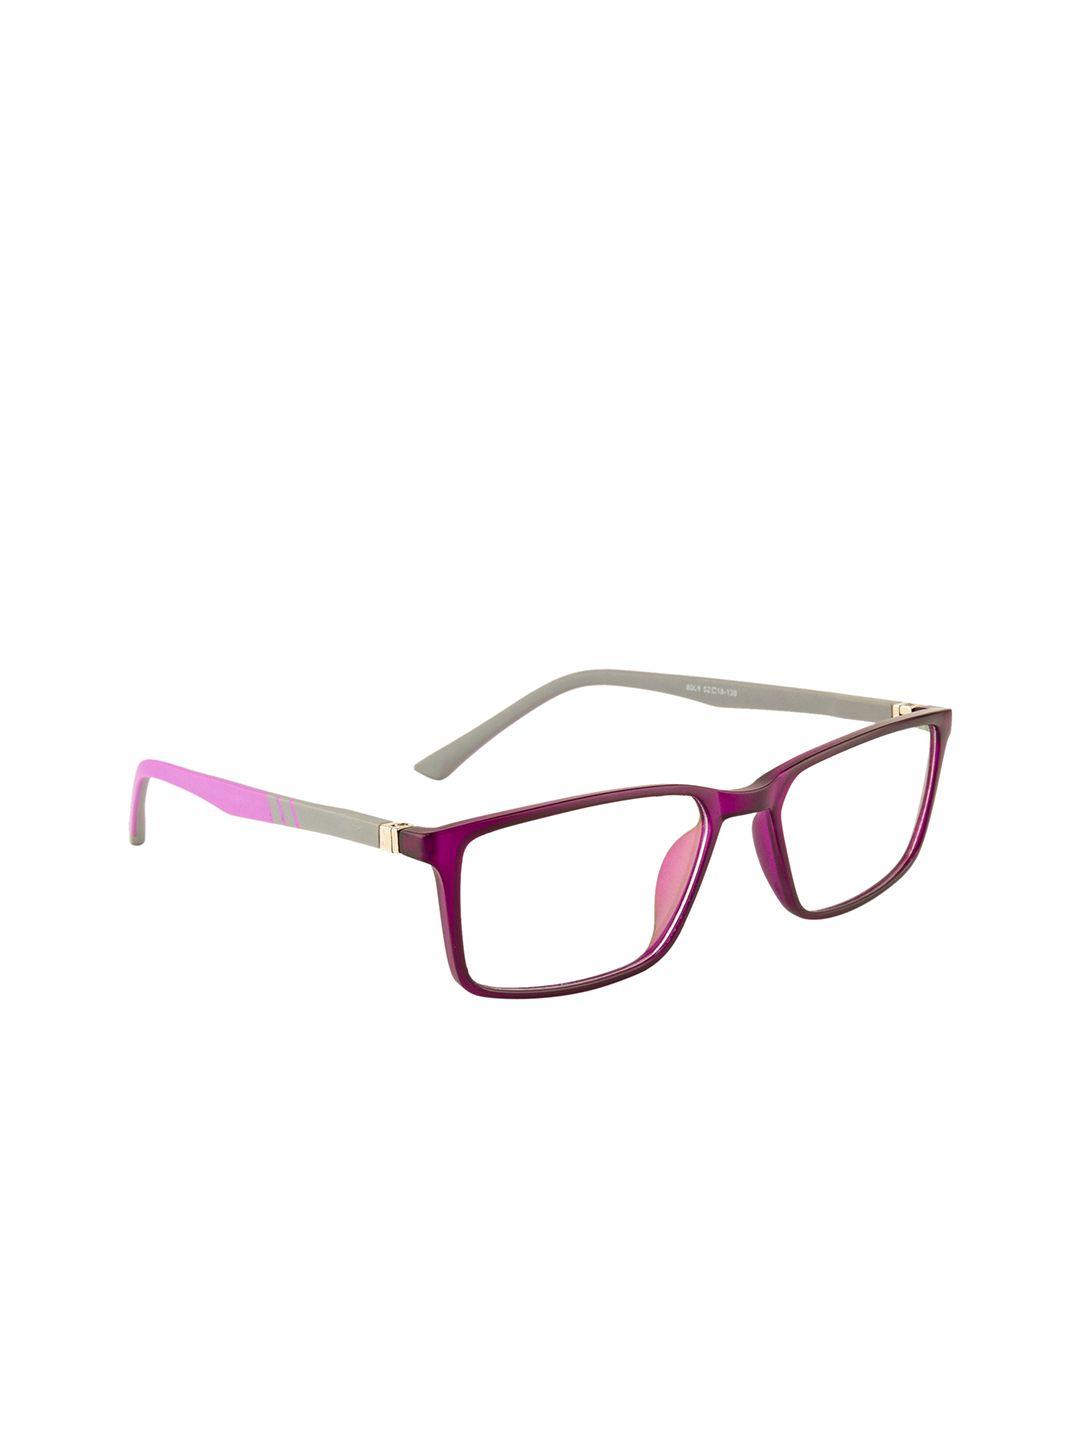 gold berg unisex purple & pink full rim wayfarer frames eyeglasses